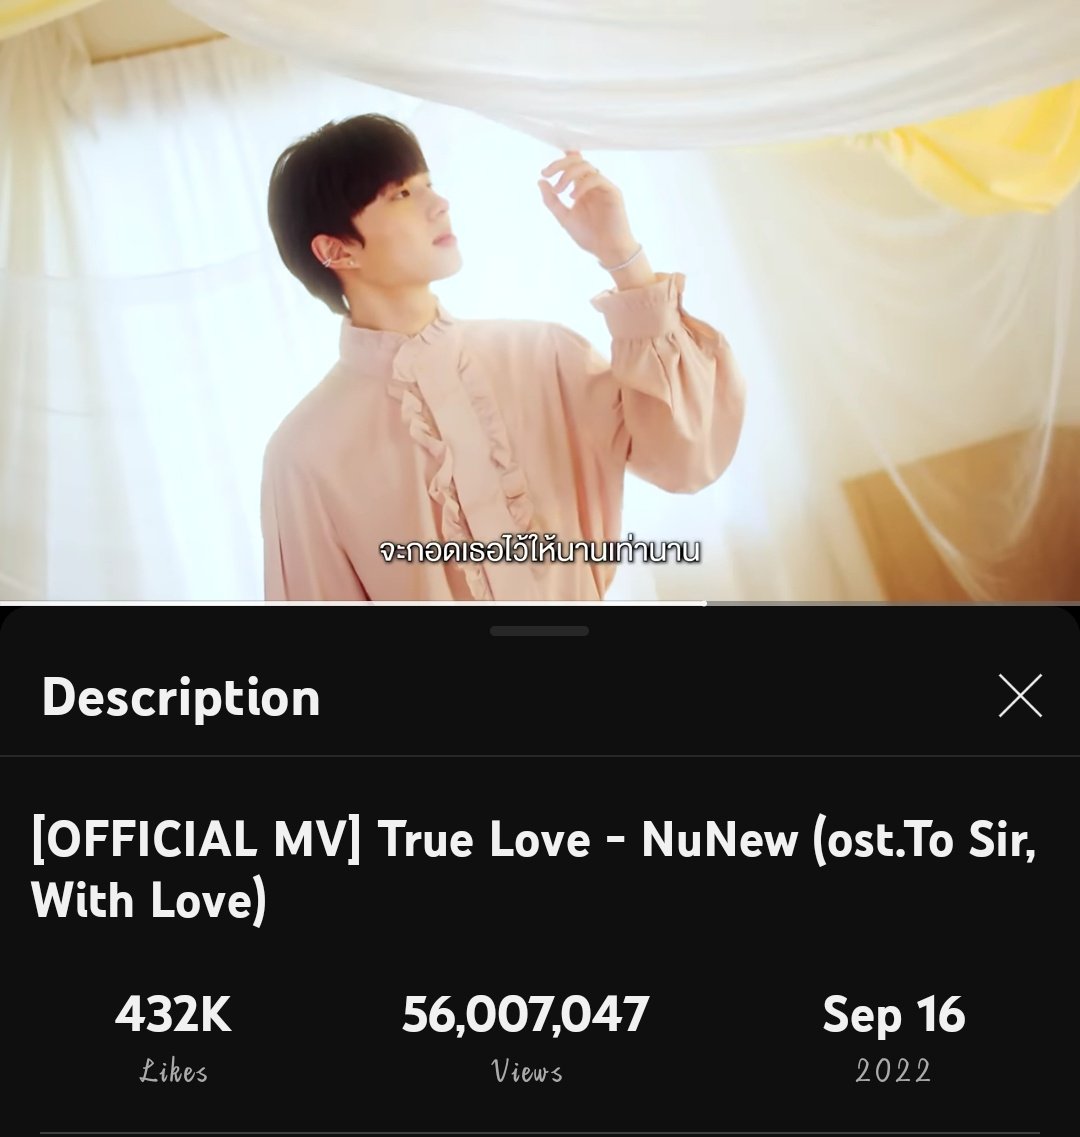 #รักแท้OstคุณชายByนุนิว

Congrats Nong Rak Tae for reaching 56M views 🥳🎉🎉 keep on listening guys to increase the views🫶🏻

True Love | NuNew 
youtu.be/bzpmJJcO47E

𓂅⋆ @CwrNew ♡
#NuNew #NanaNu